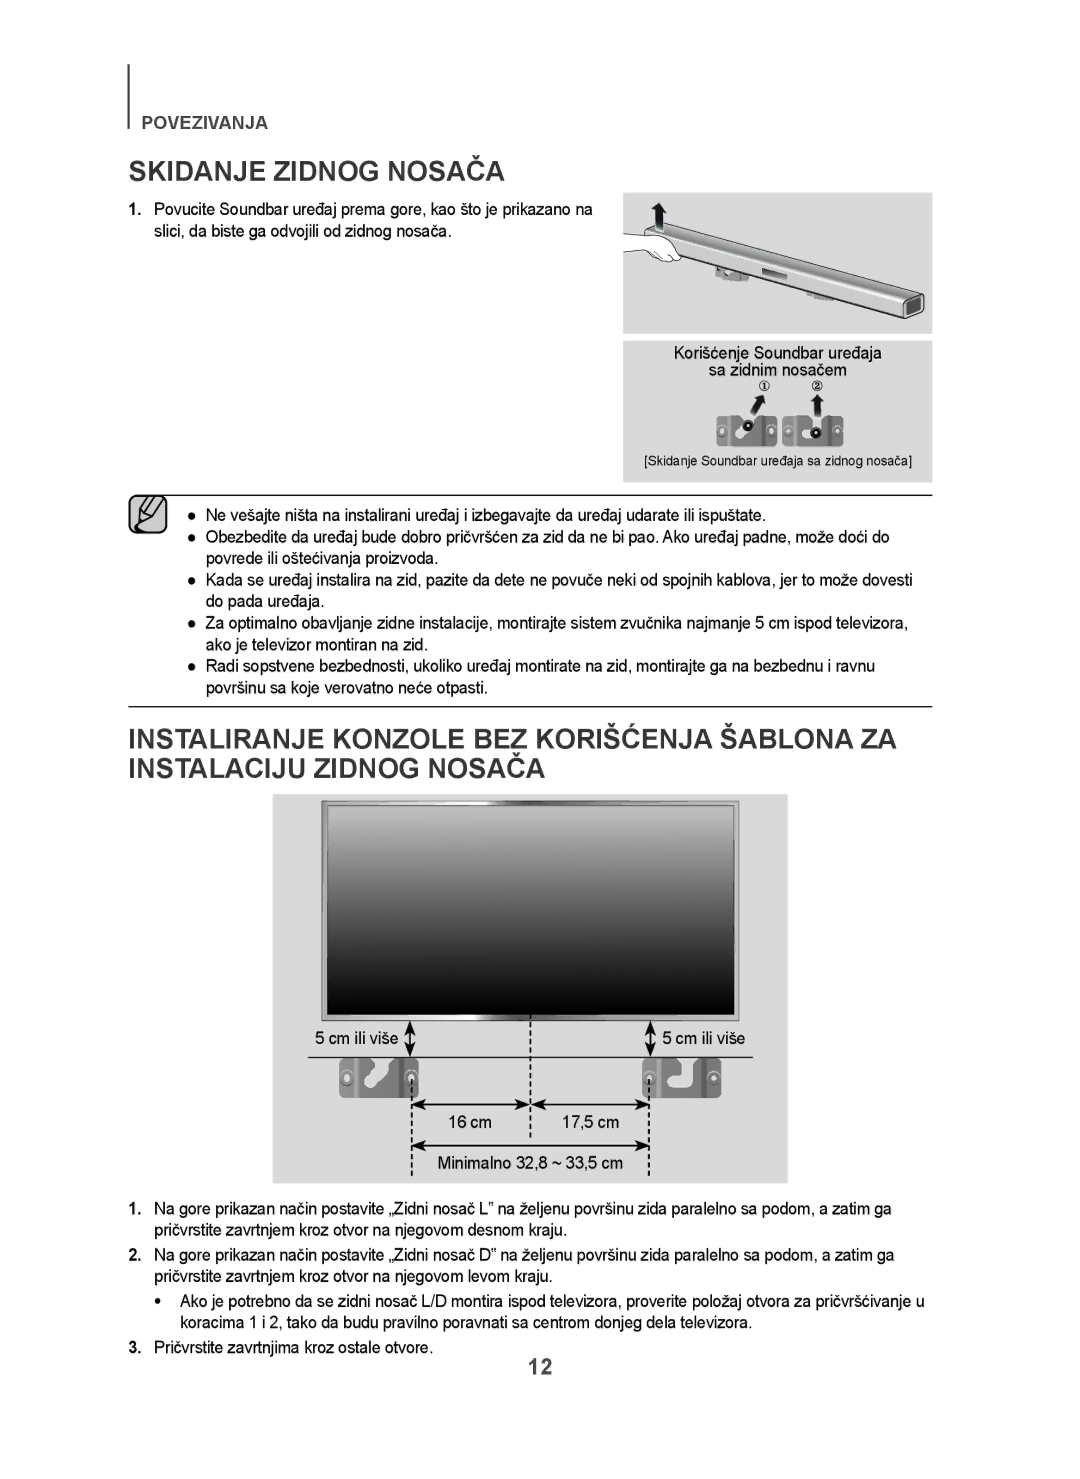 Samsung HW-H450/ZF, HW-H450/TK, HW-H450/EN, HW-H450/XN Skidanje Zidnog Nosača, Korišćenje Soundbar uređaja Sa zidnim nosačem 